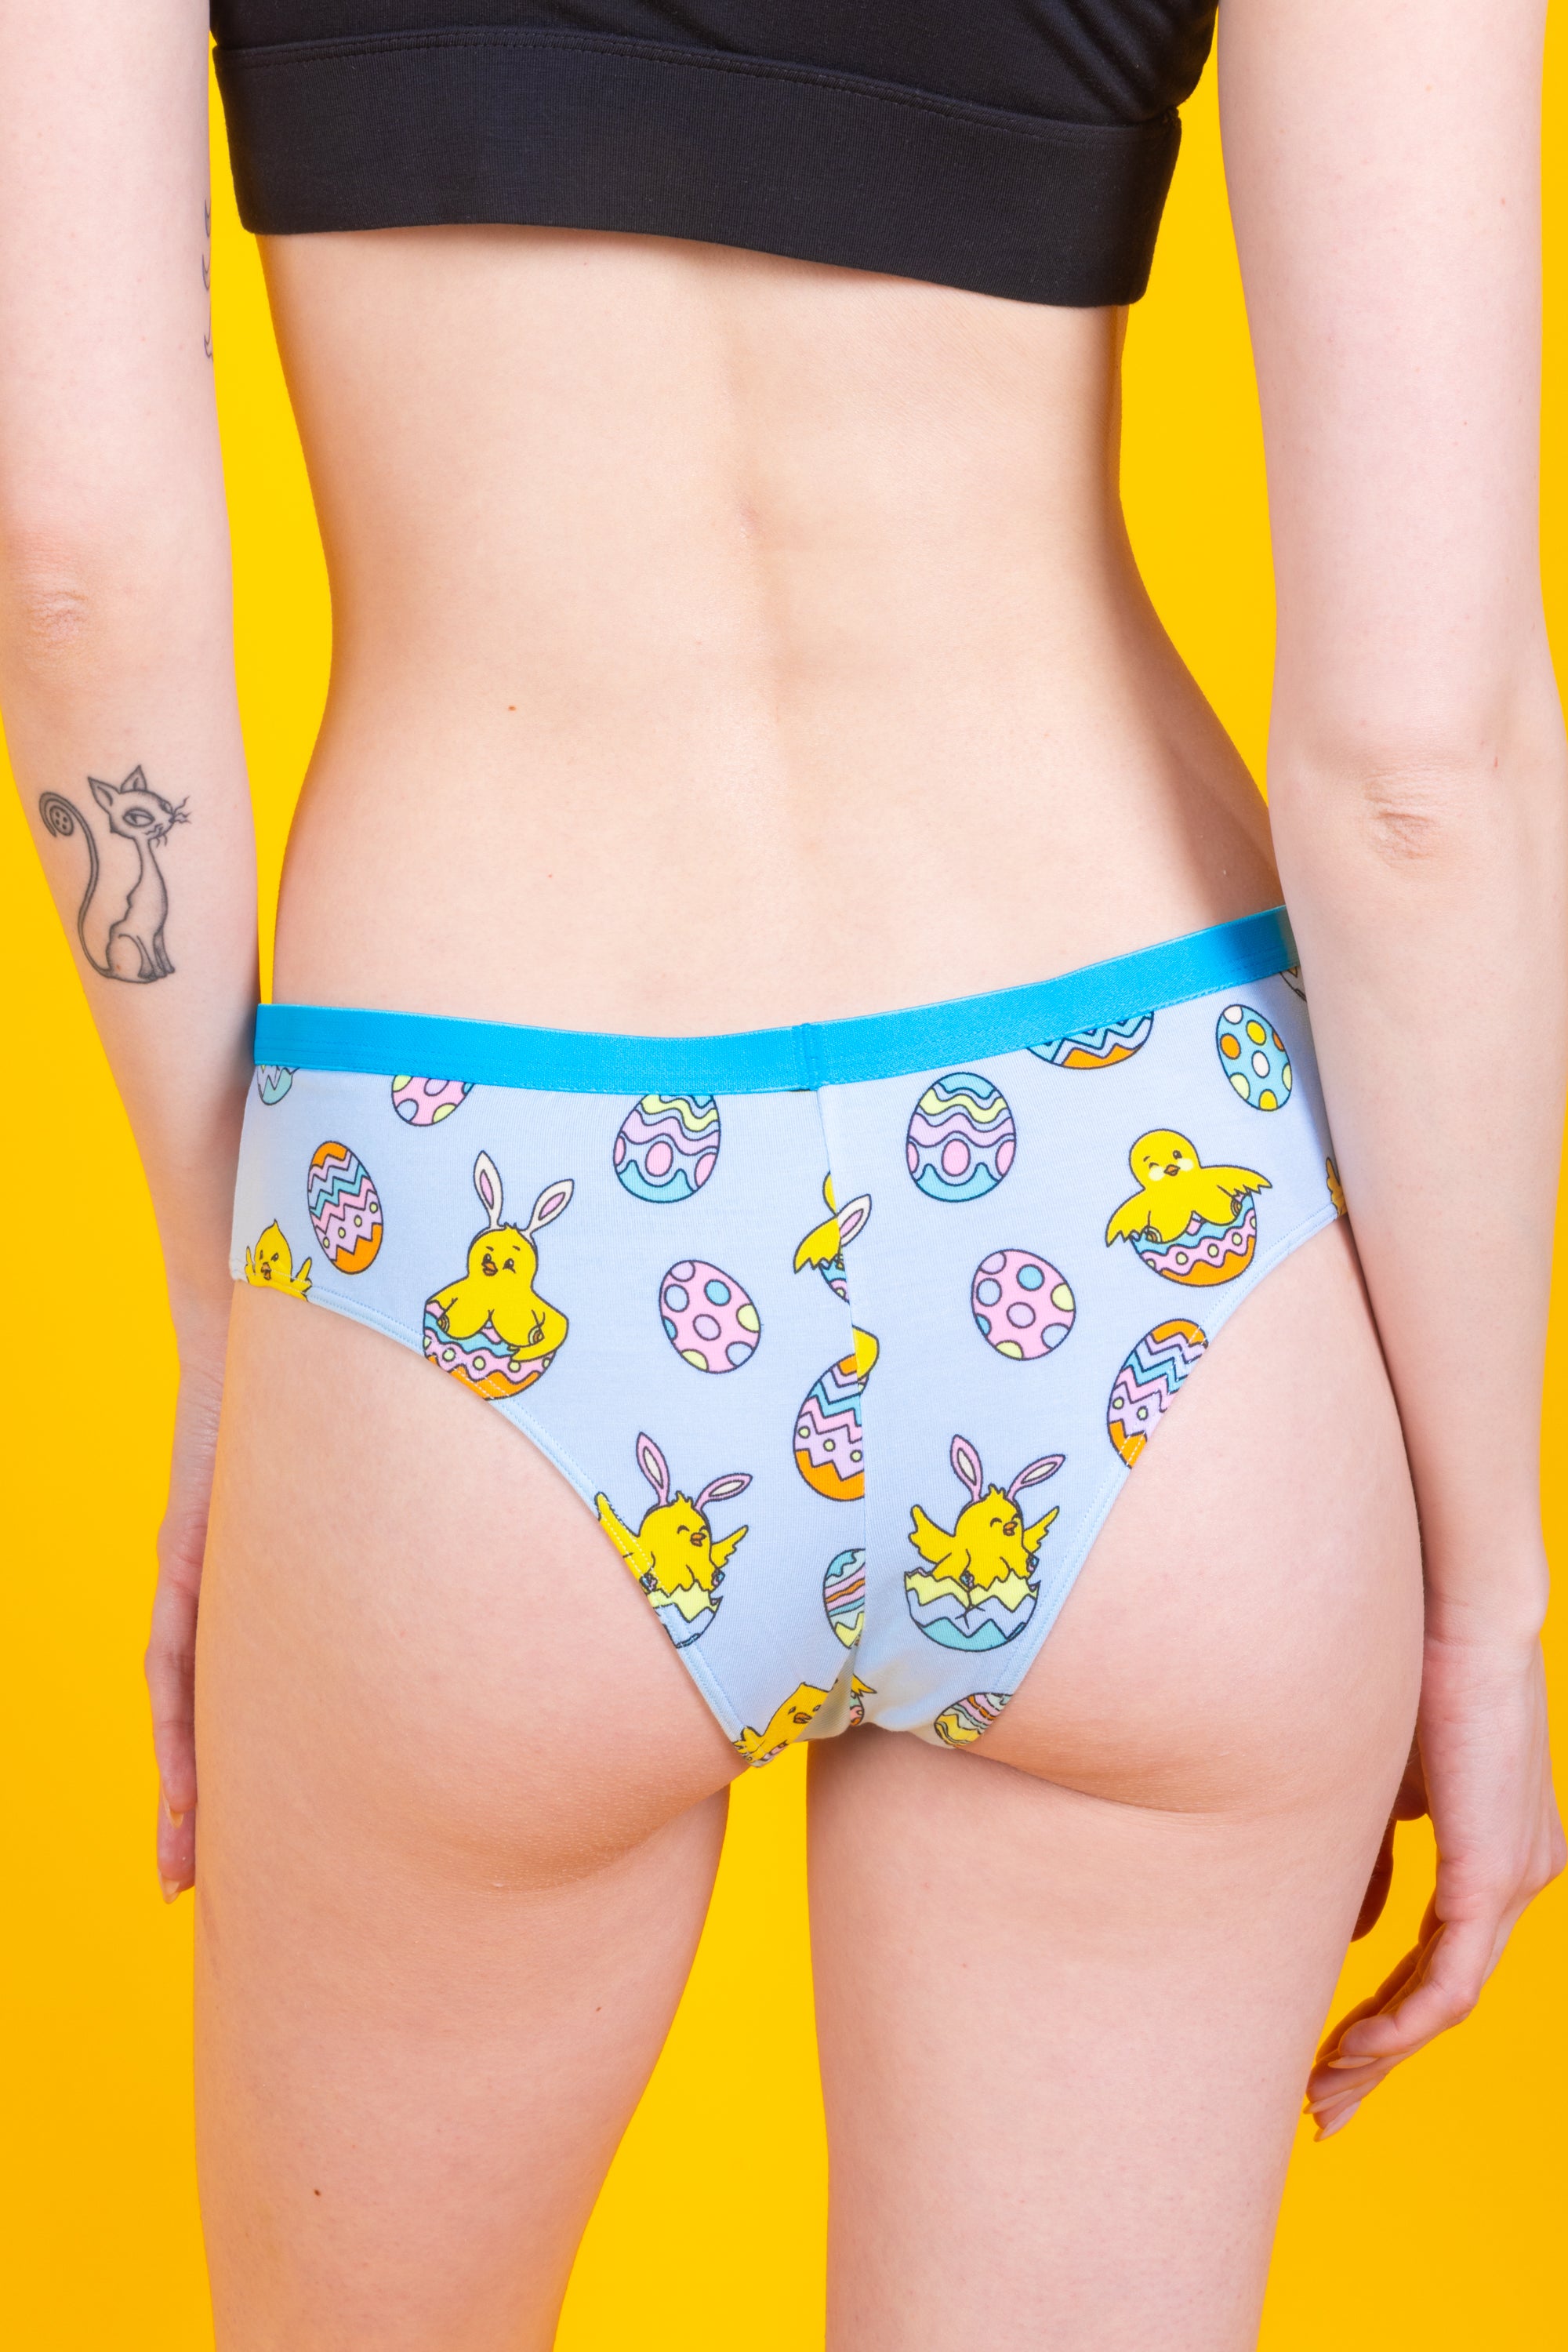 The Chicks Gone Wild | Easter Chicks Cheeky Underwear